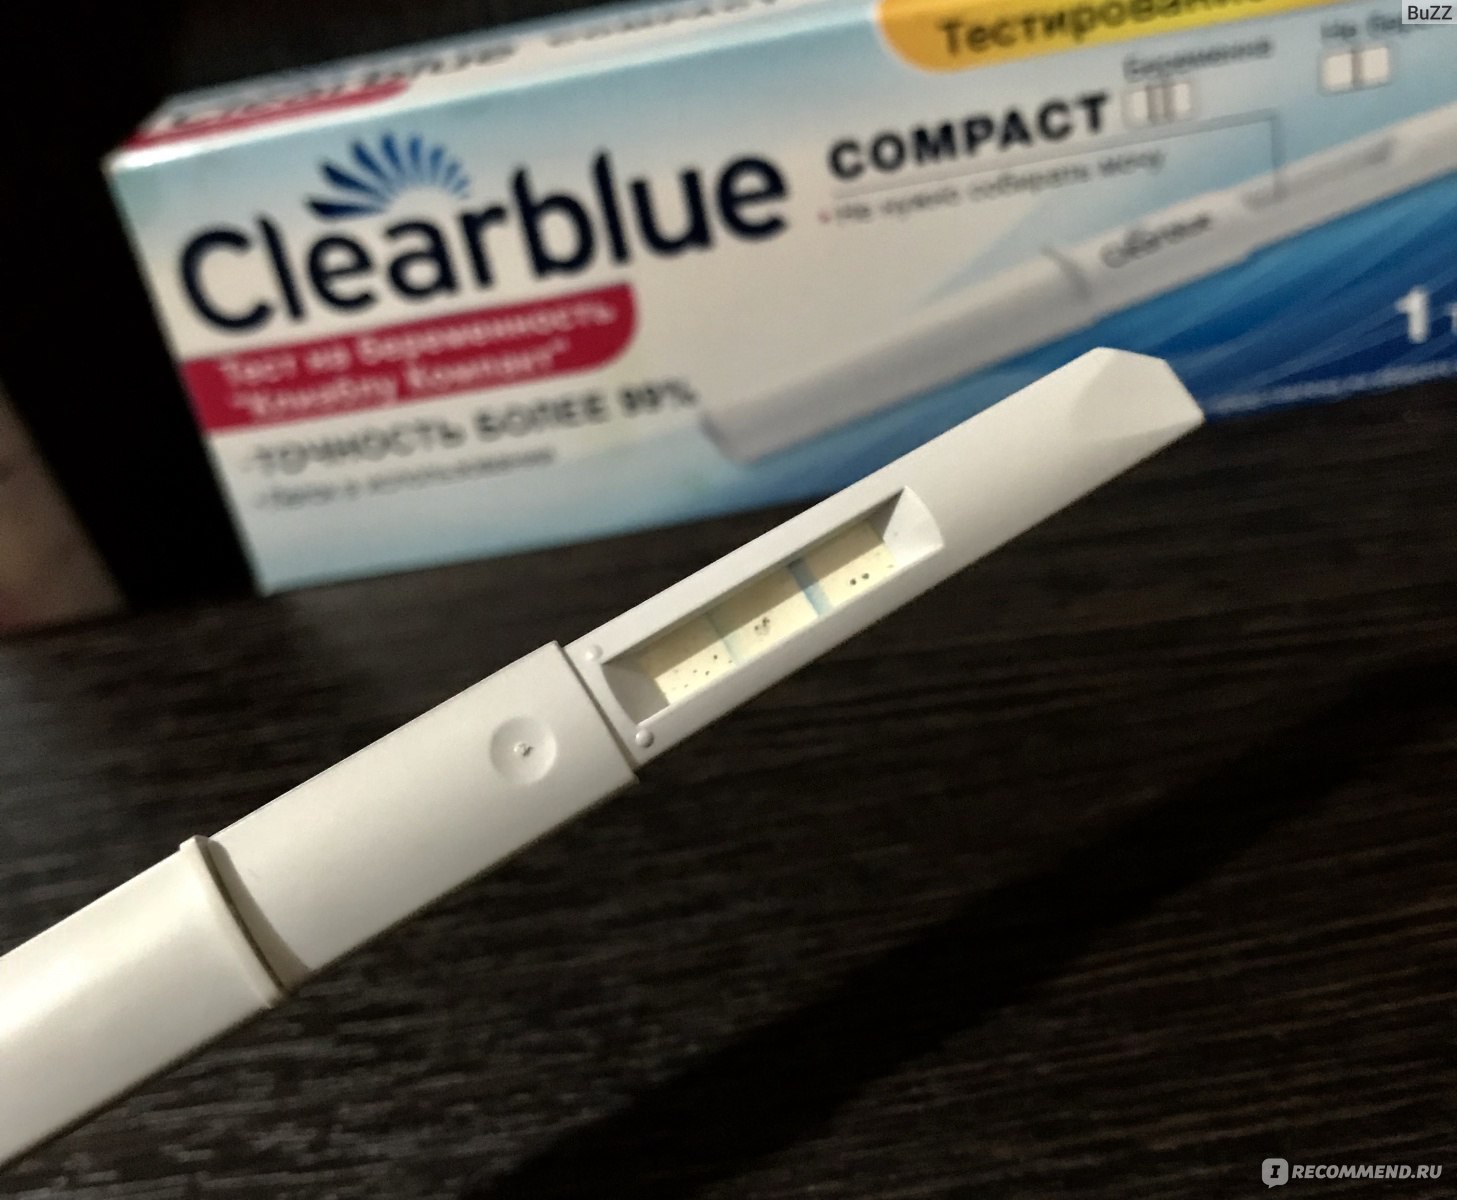 Покажи компакт. Clearblue Compact. Clearblue компакт. Тест Clearblue Compact. Струйный тест на беременность до задержки.